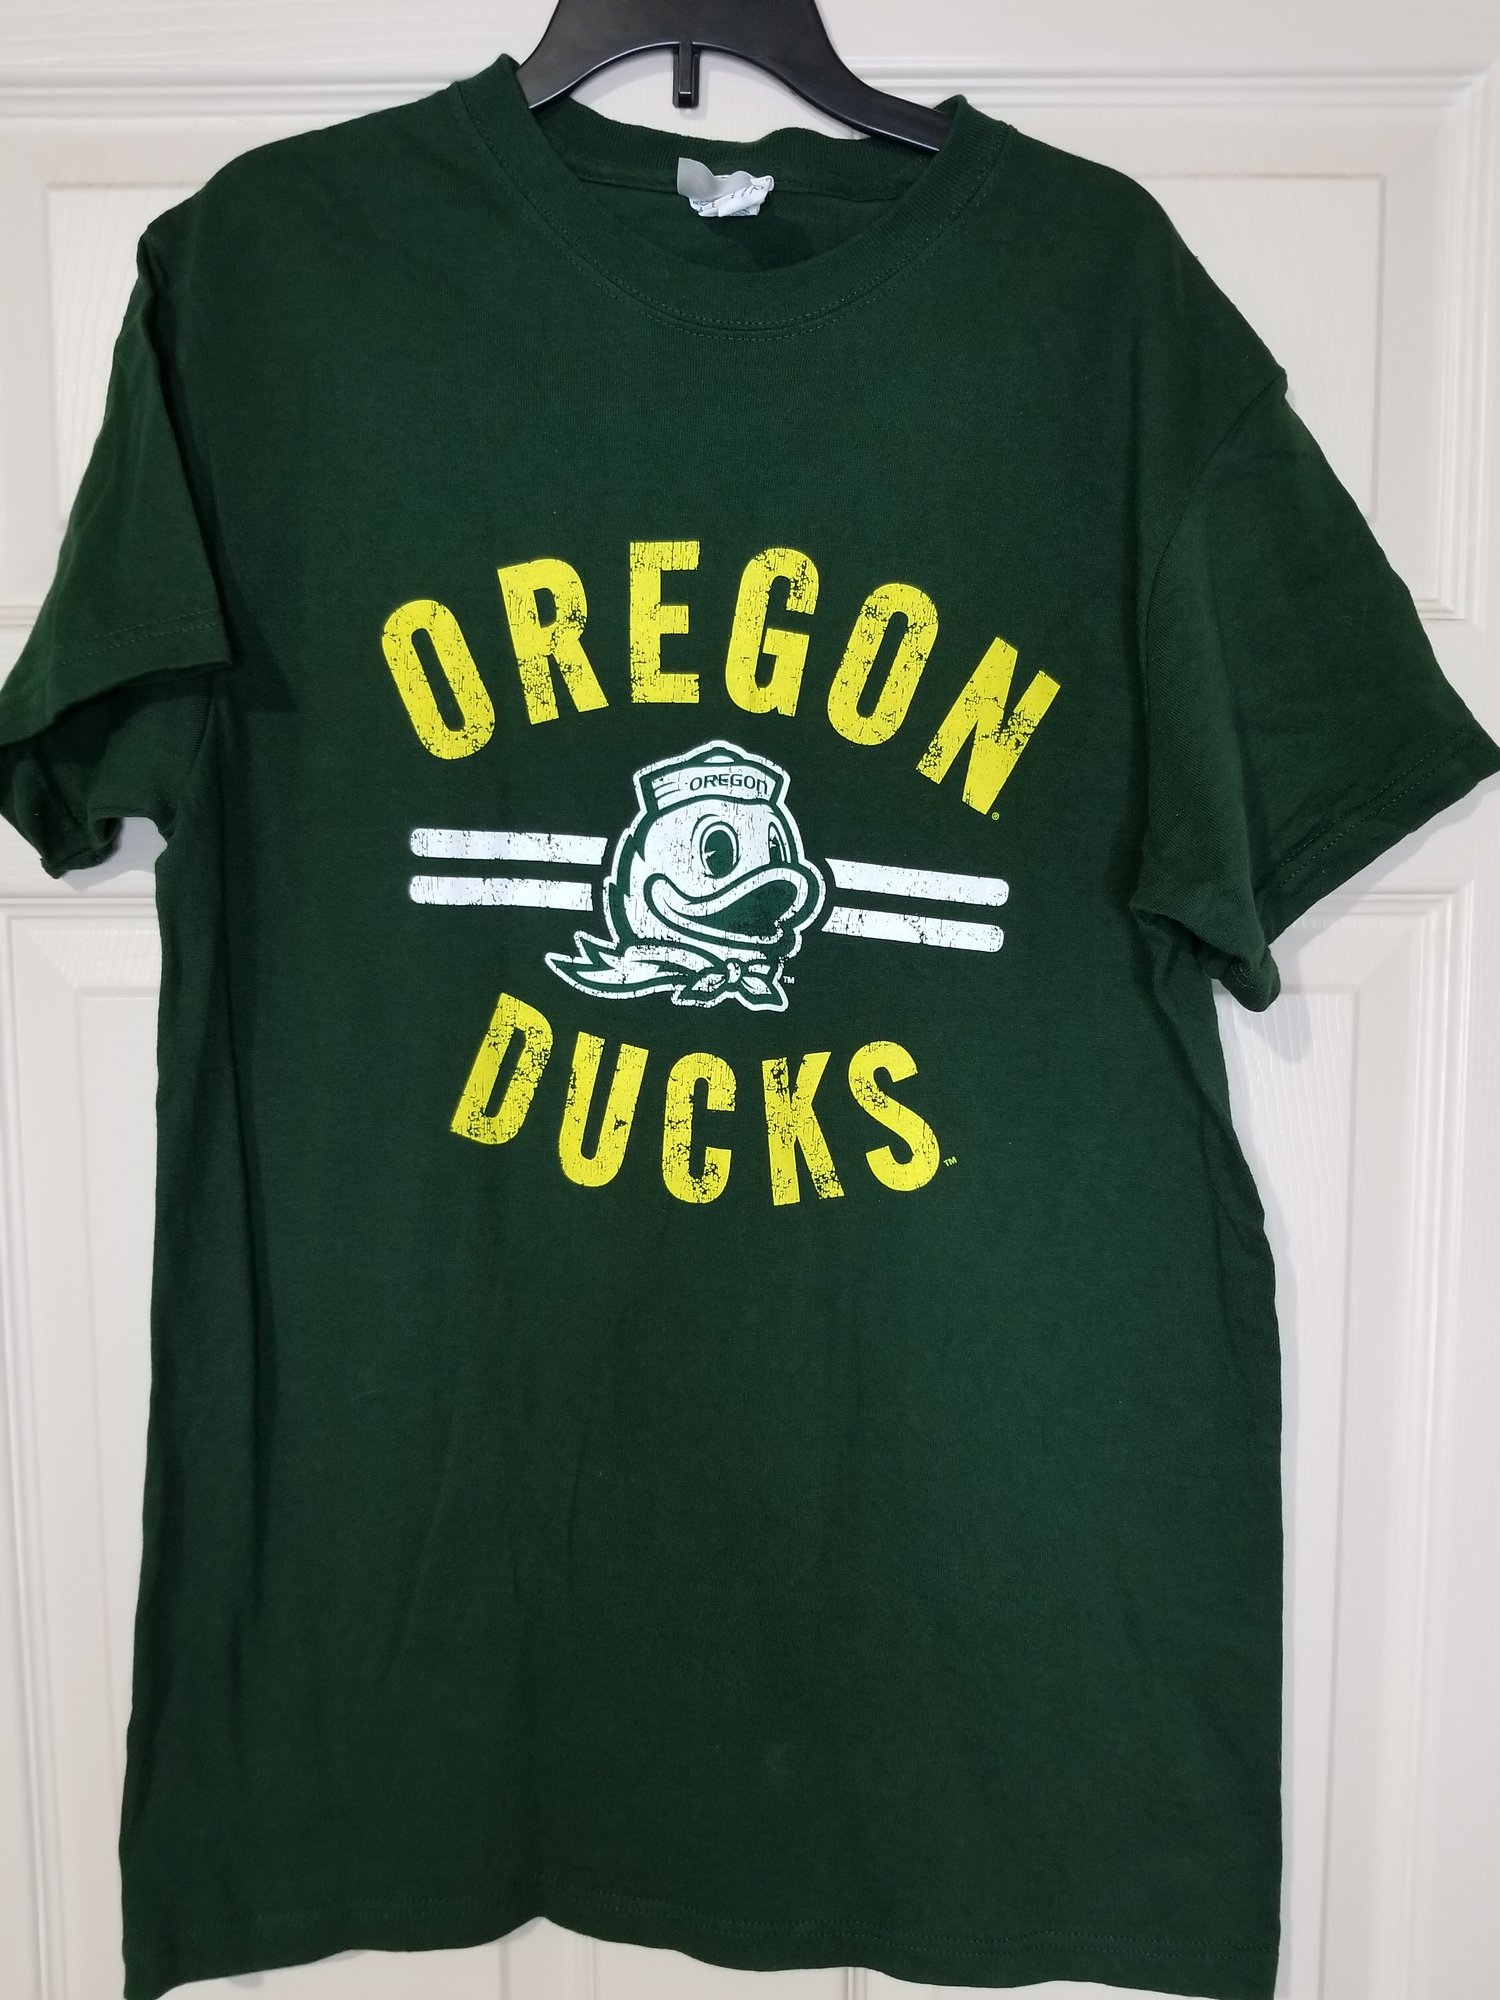 Vintage Oregon Ducks Tee size Medium